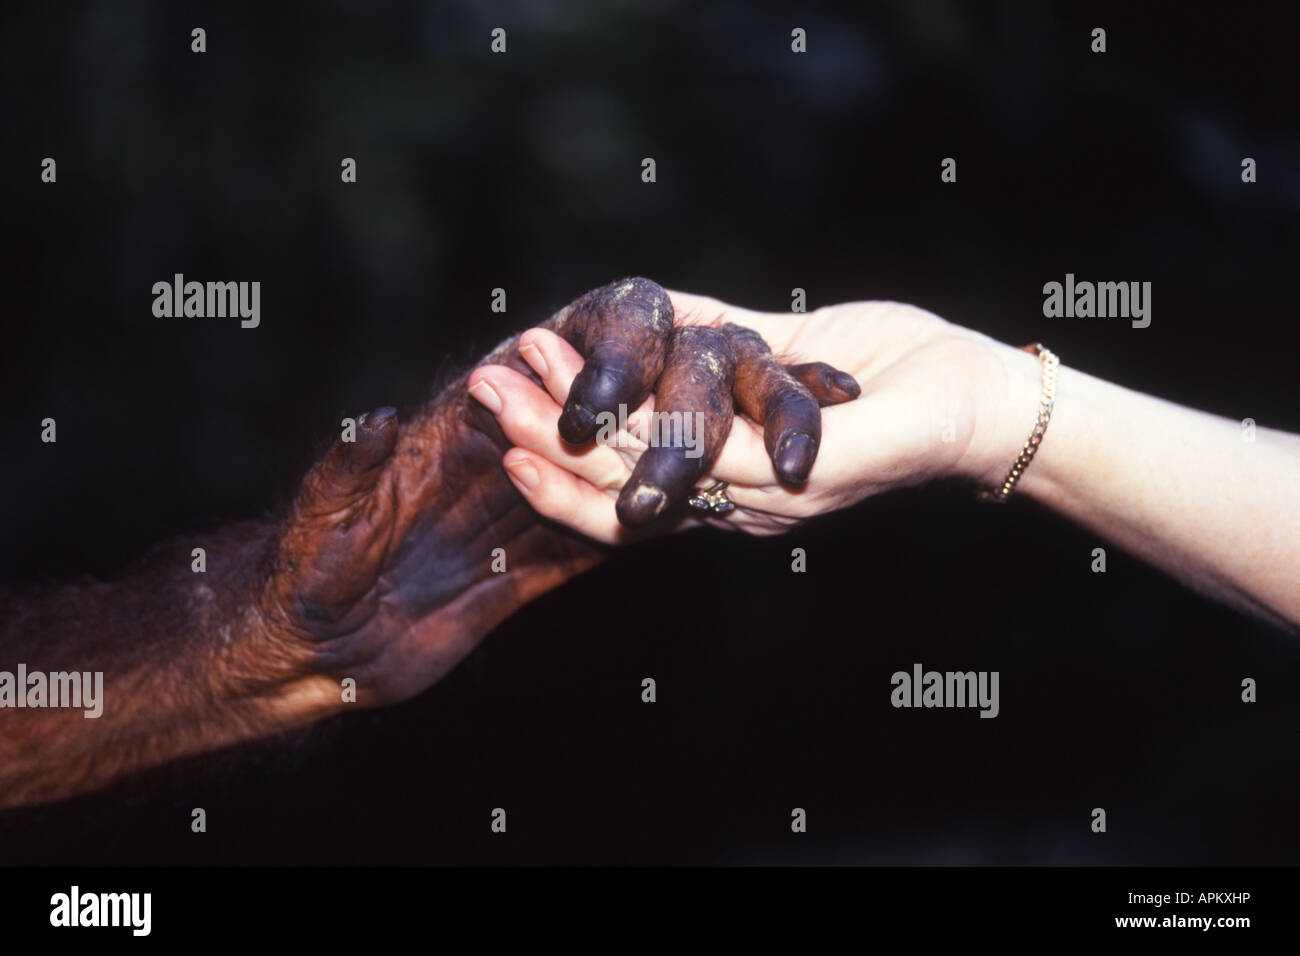 orang-utan, orangutan, orang-outang (Pongo pygmaeus), hand of Urang-Utan and woman Stock Photo